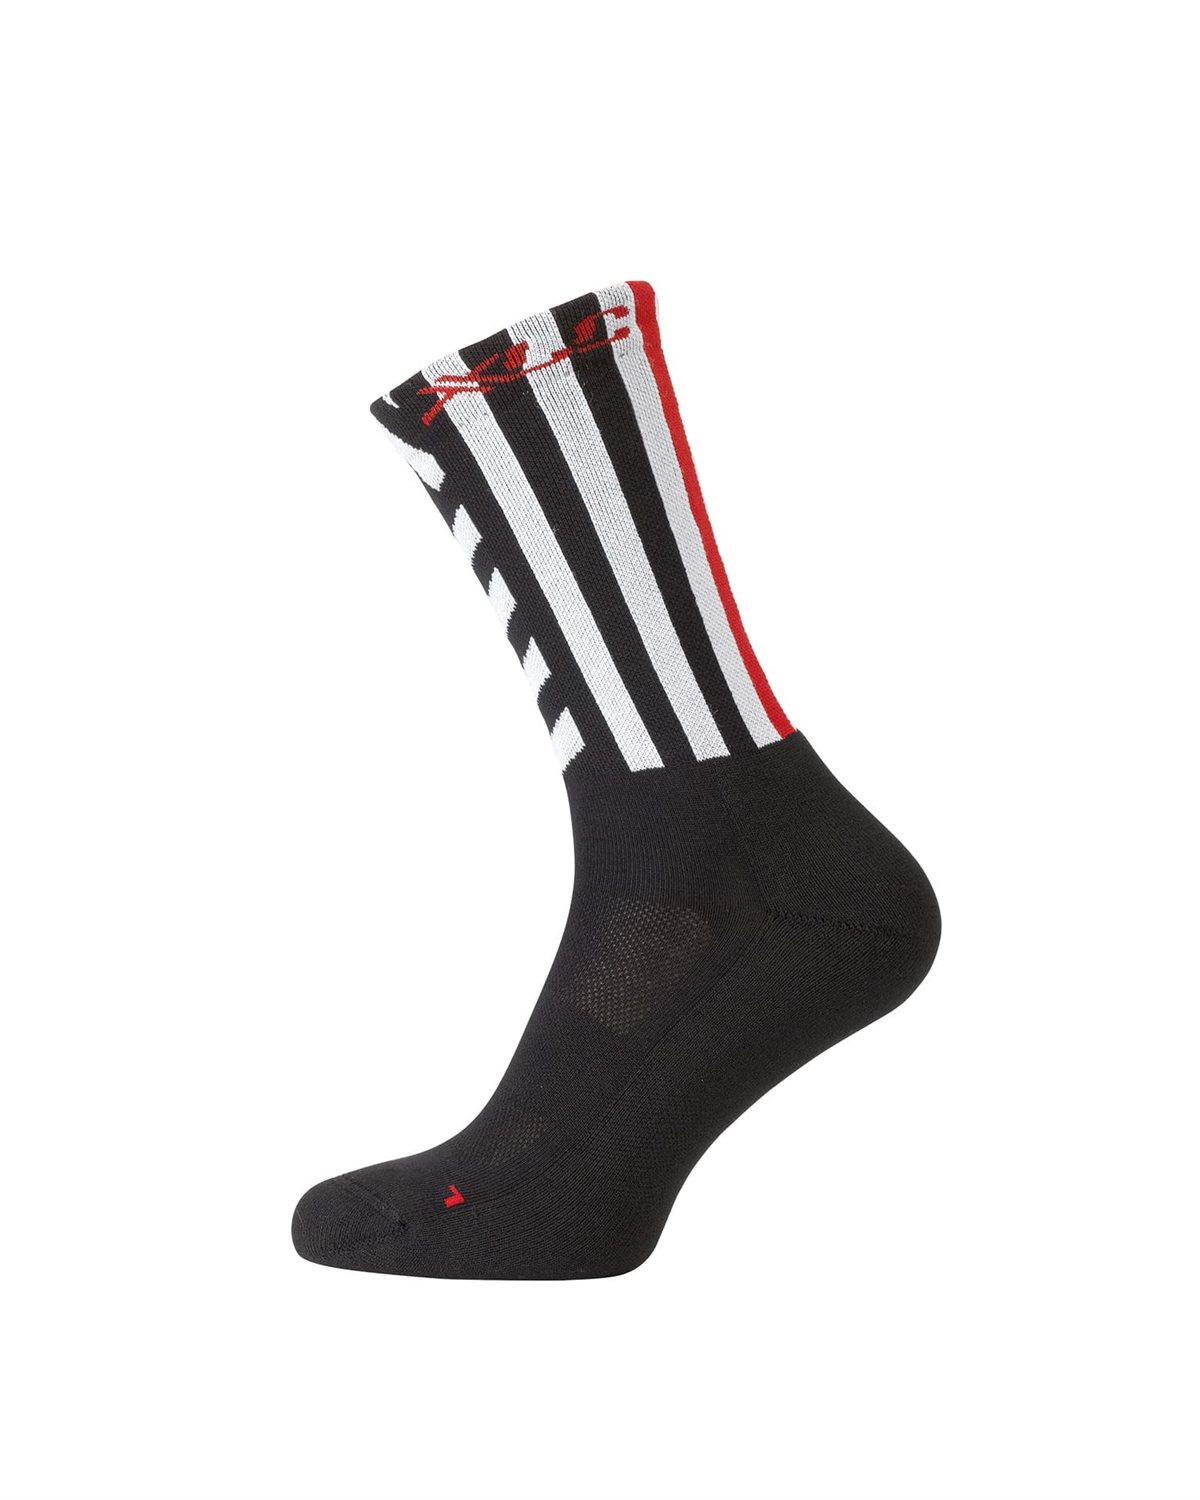 All Mtn Socks CS-L02 Schwarz/Weiß 42-45